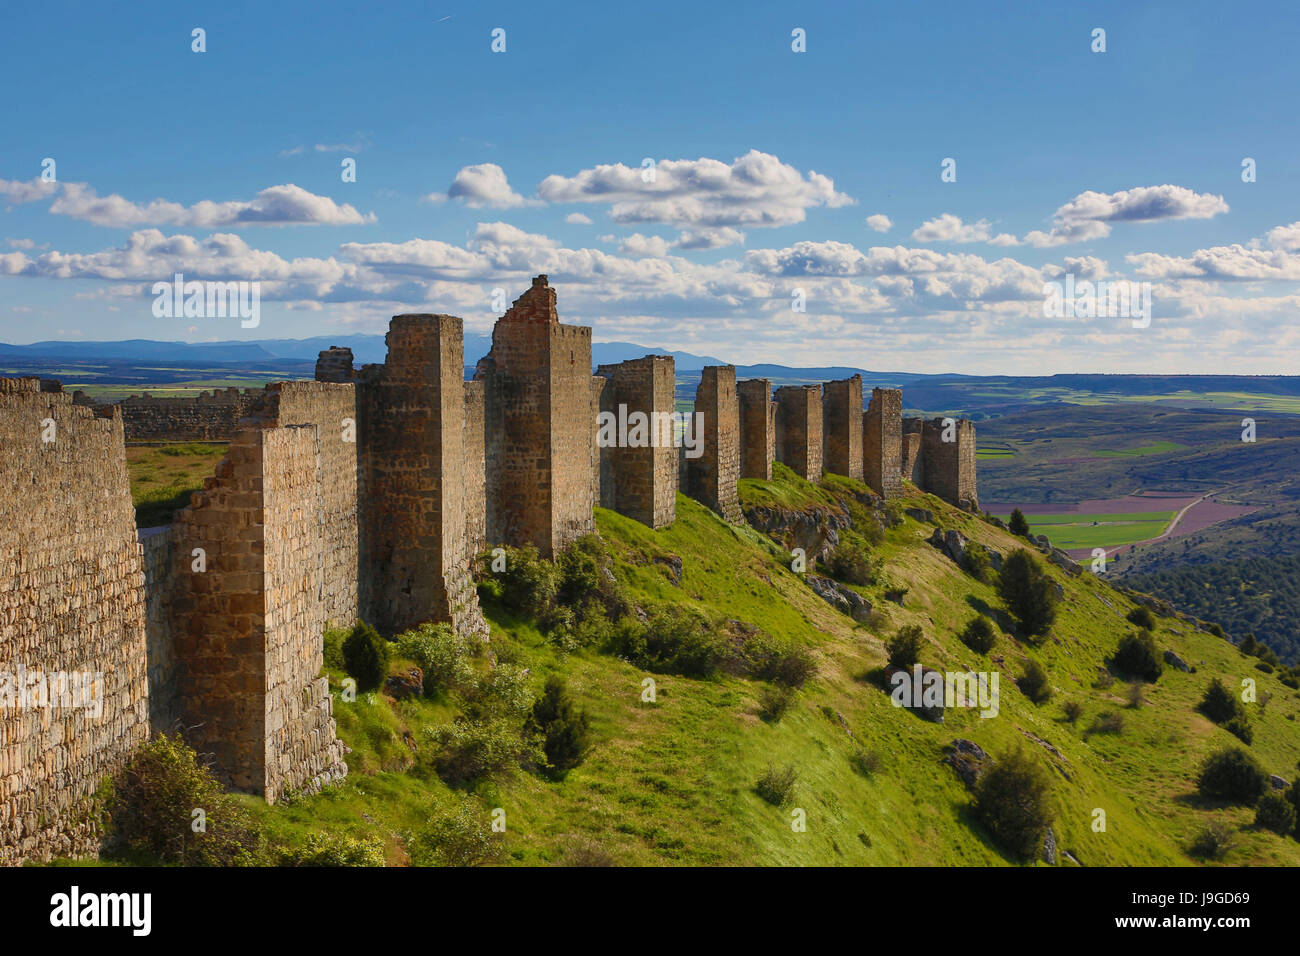 Spain, Castilla Leon Community, Soria Province, Gormaz Castle, Stock Photo